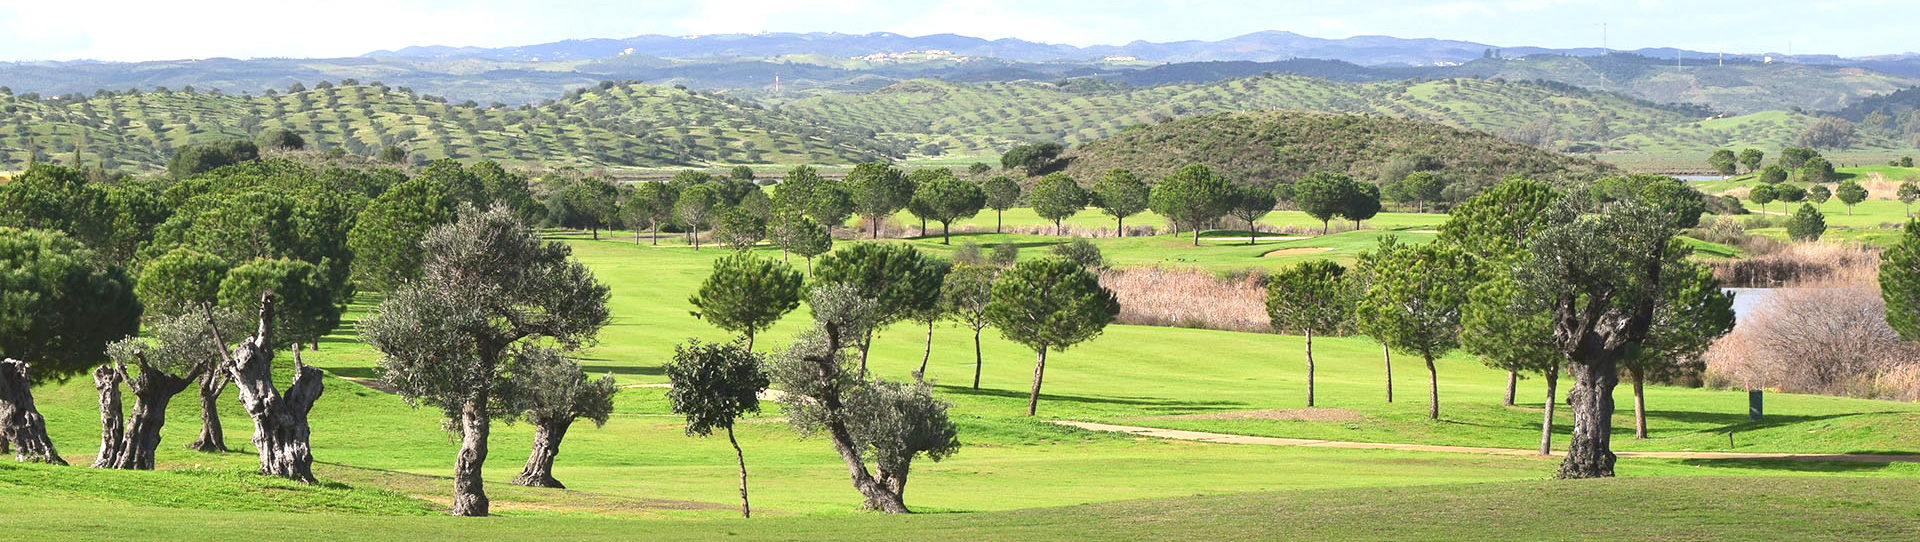 Portugal golf holidays - Isla Canela & Valle Guadiana - Photo 1